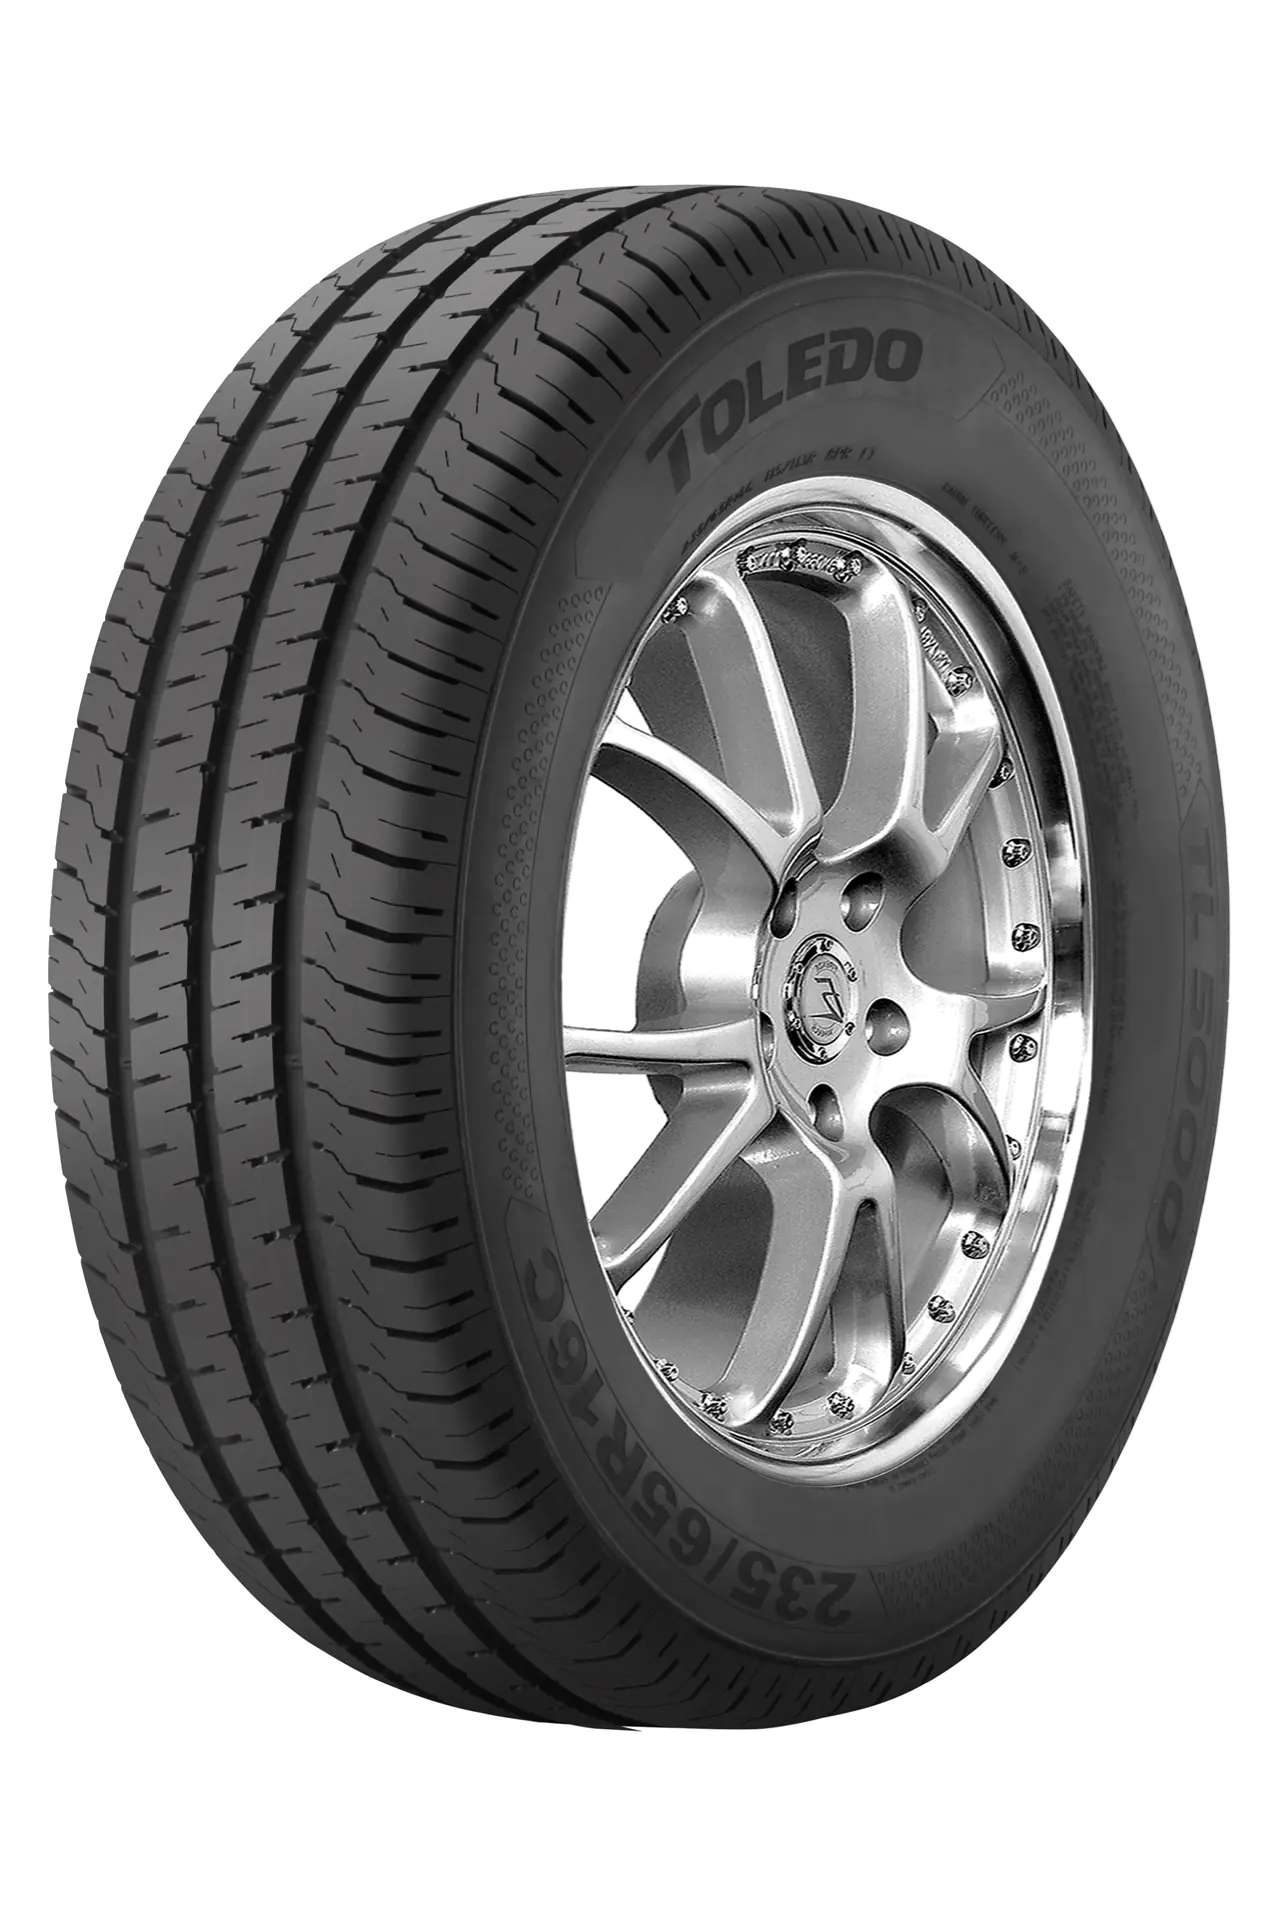 Toledo Toledo 235/65 R16C 115R TL5000 pneumatici nuovi Estivo 